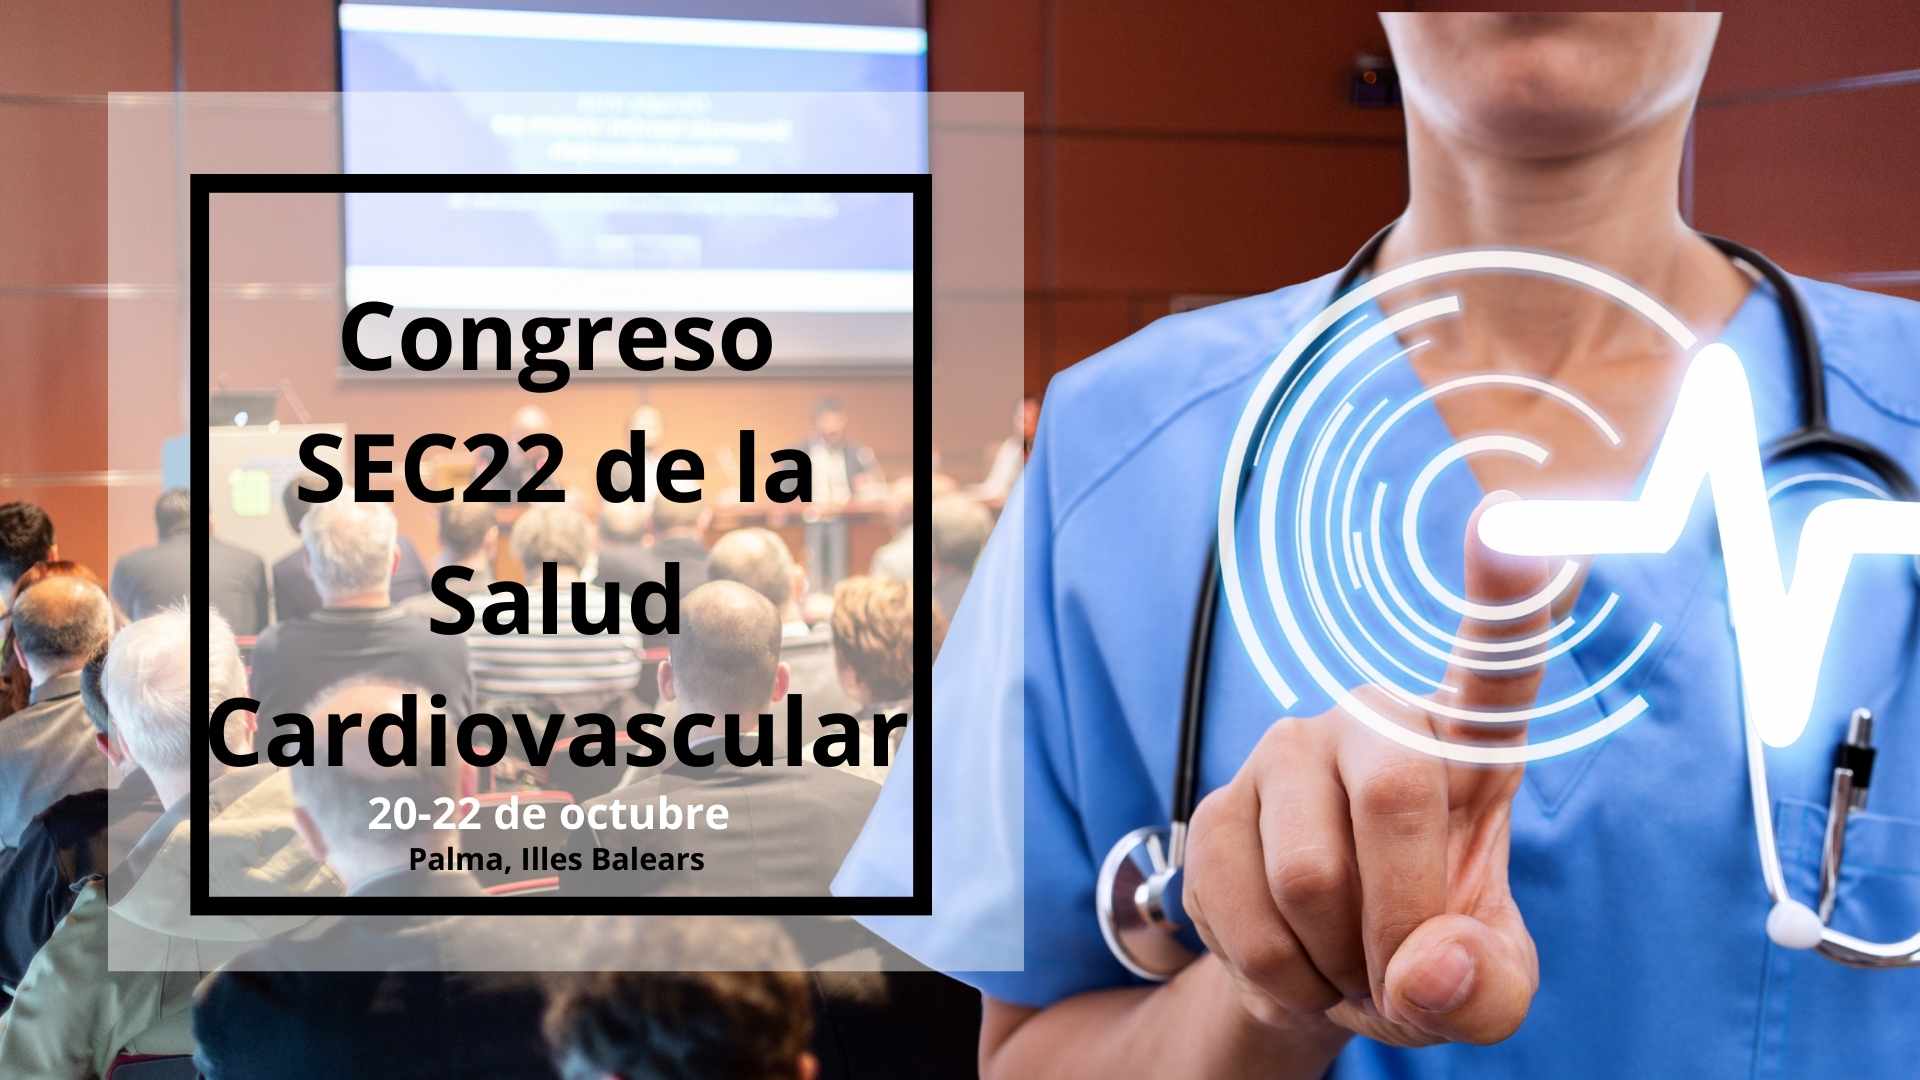 Congreso SEC22 de la Salud Cardiovascular